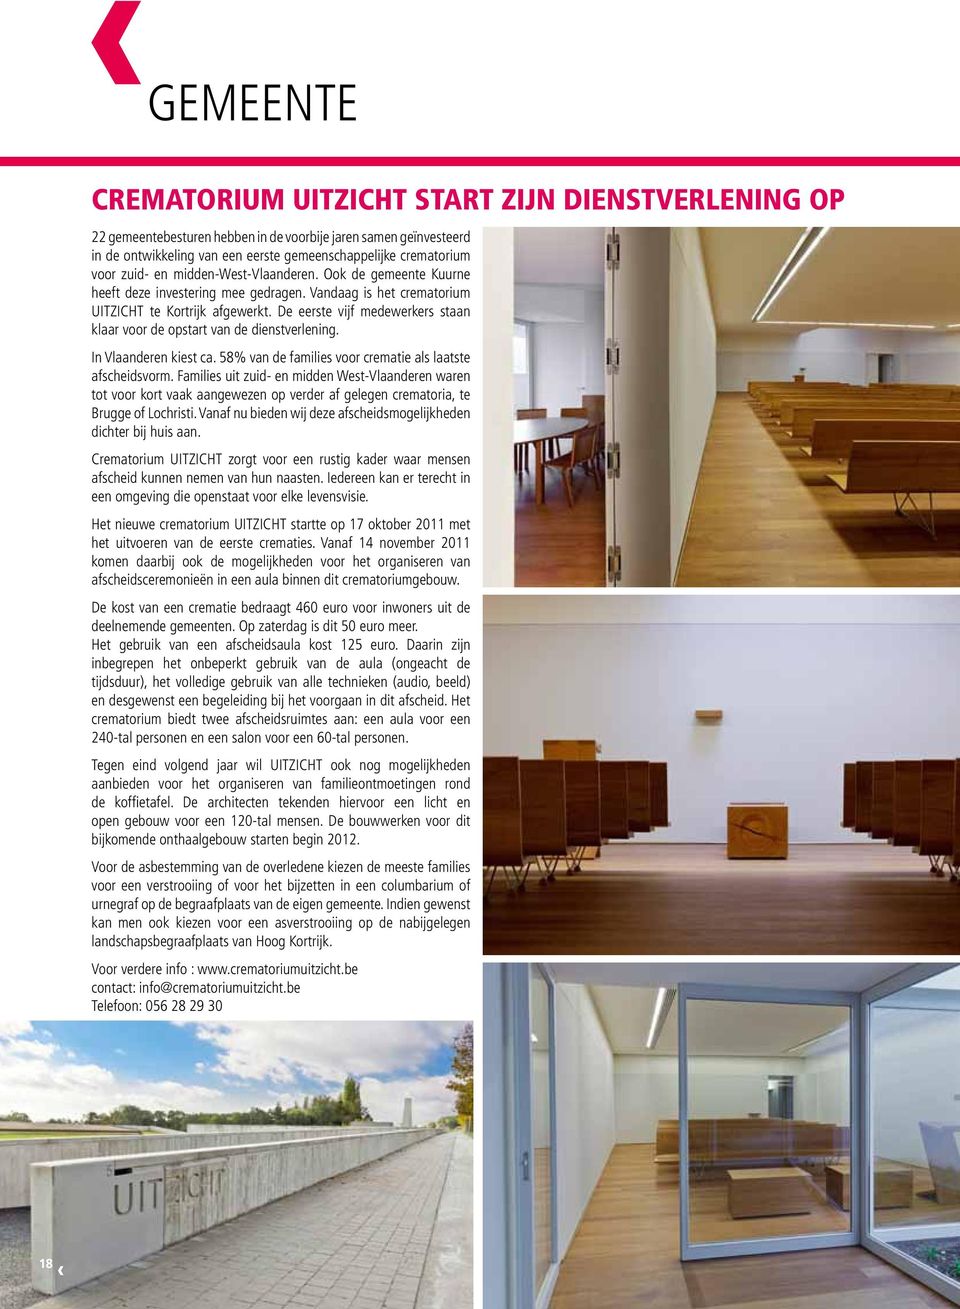 De eerste vijf medewerkers staan klaar voor de opstart van de dienstverlening. In Vlaanderen kiest ca. 58% van de families voor crematie als laatste afscheidsvorm.